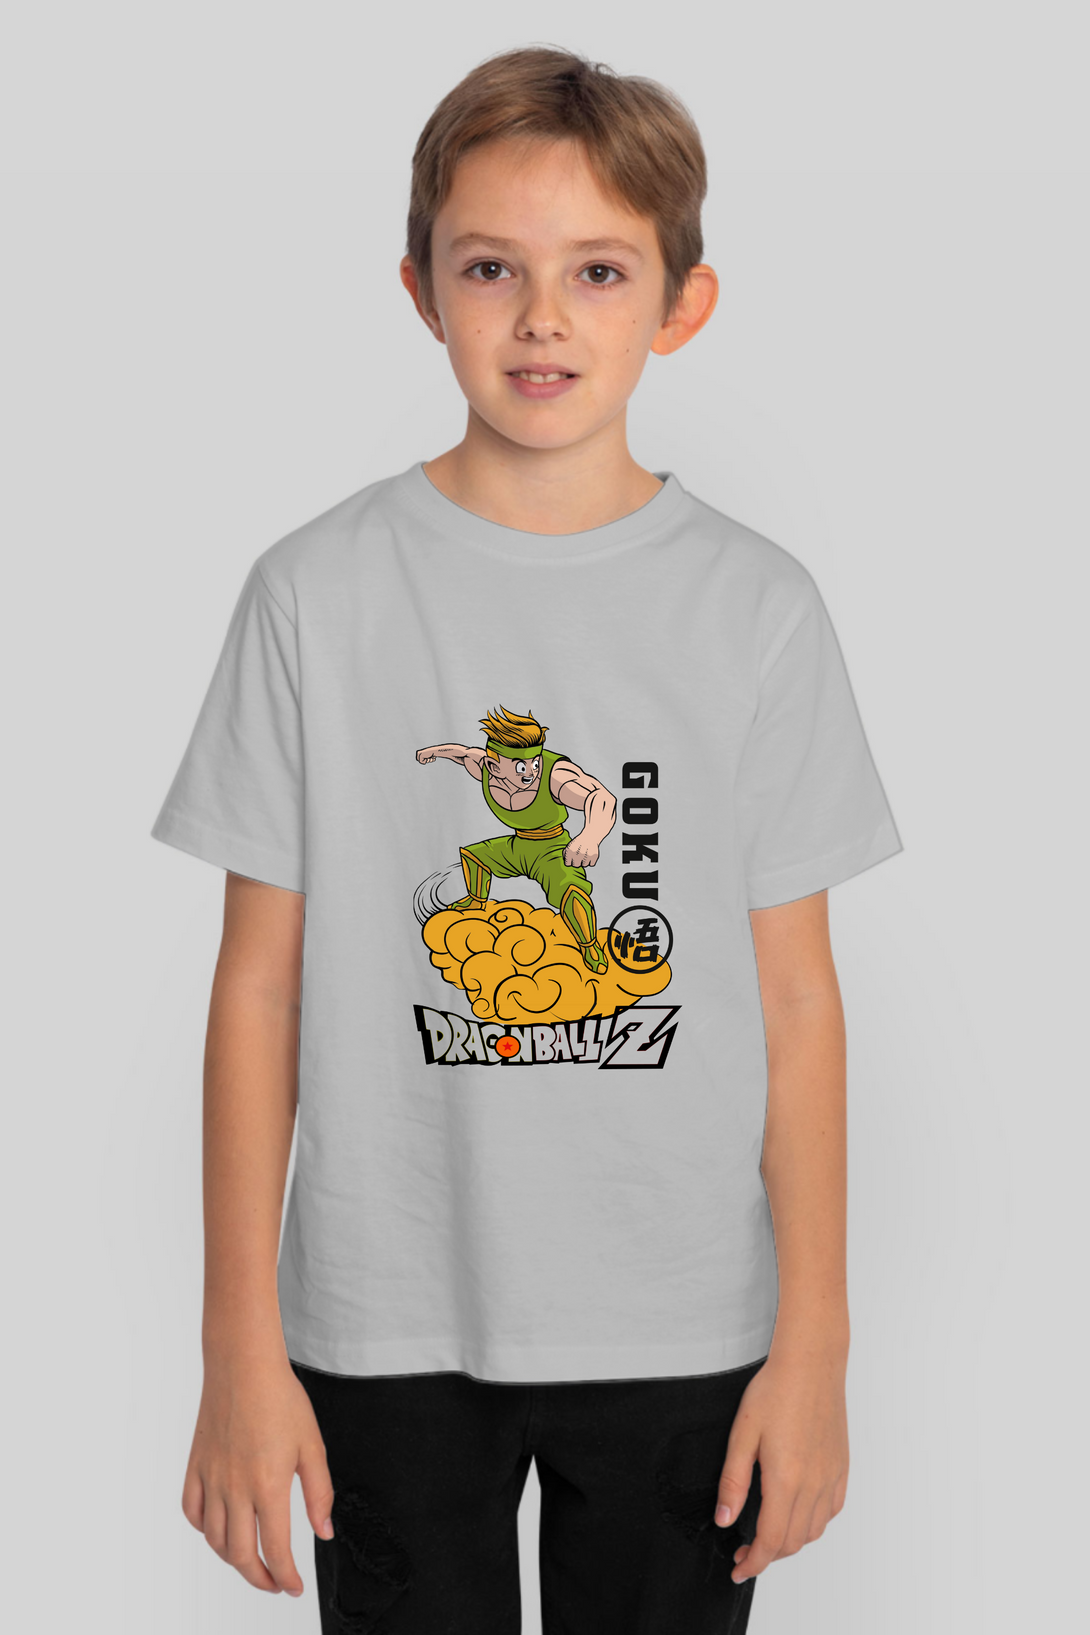 Anime Goku Printed T-Shirt For Boy - WowWaves - 8